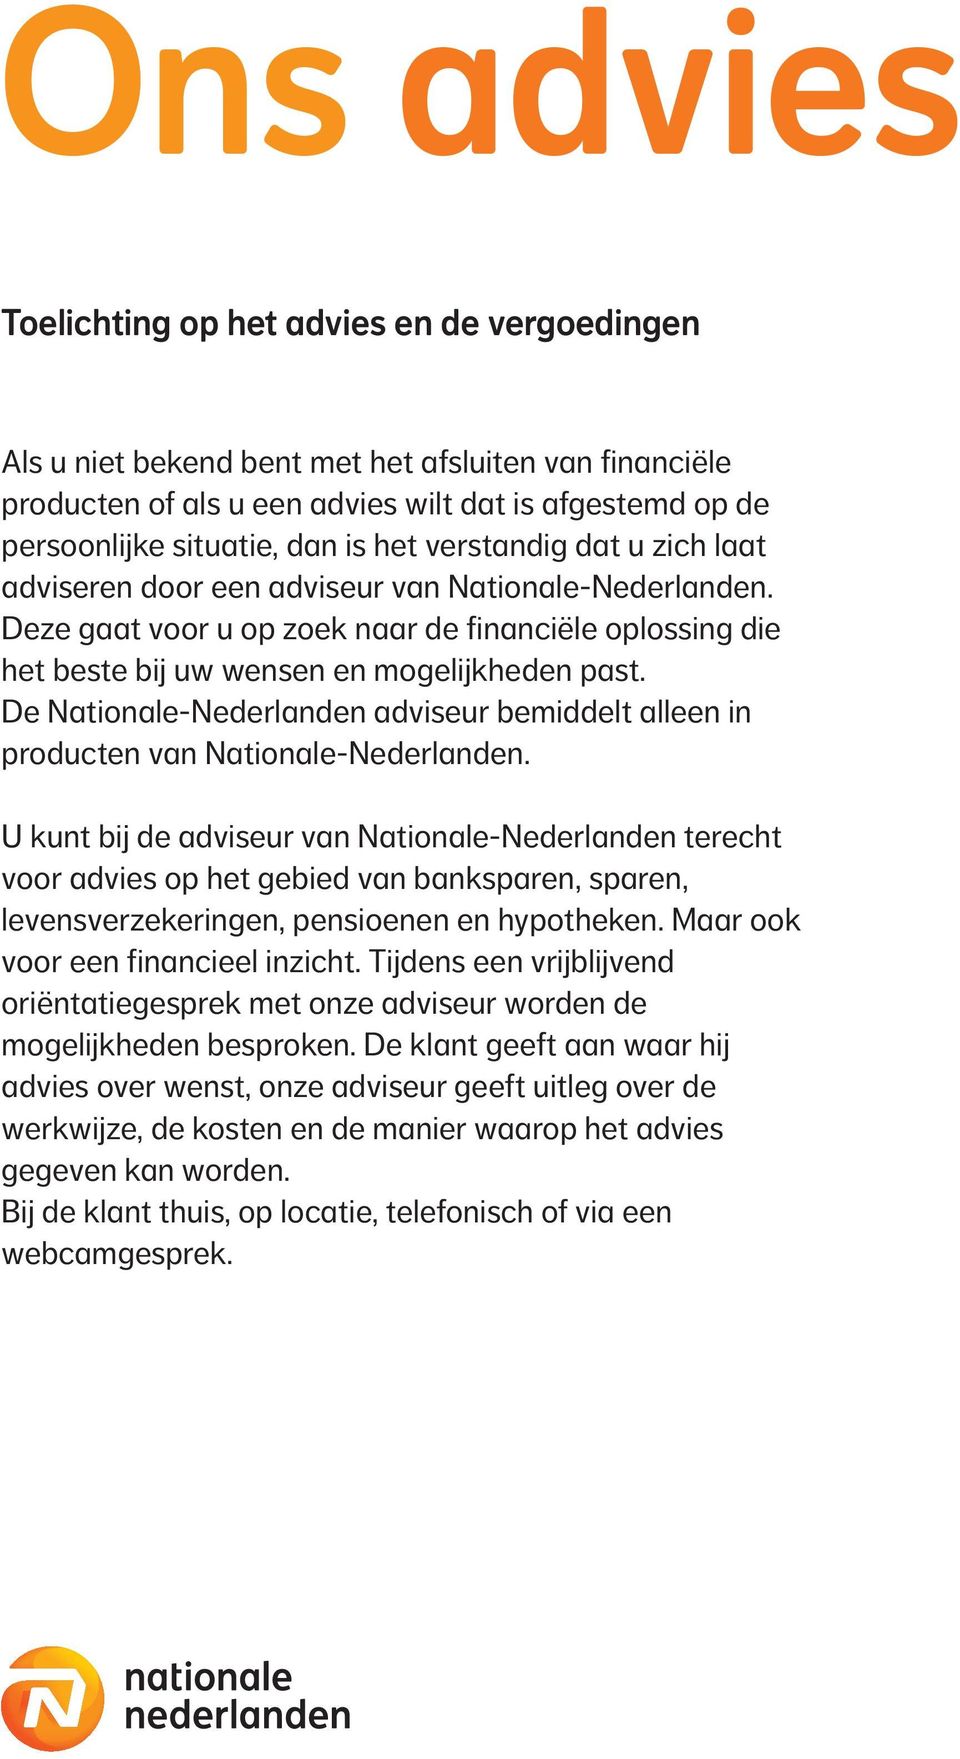 De Nationale-Nederlanden adviseur bemiddelt alleen in producten van Nationale-Nederlanden.